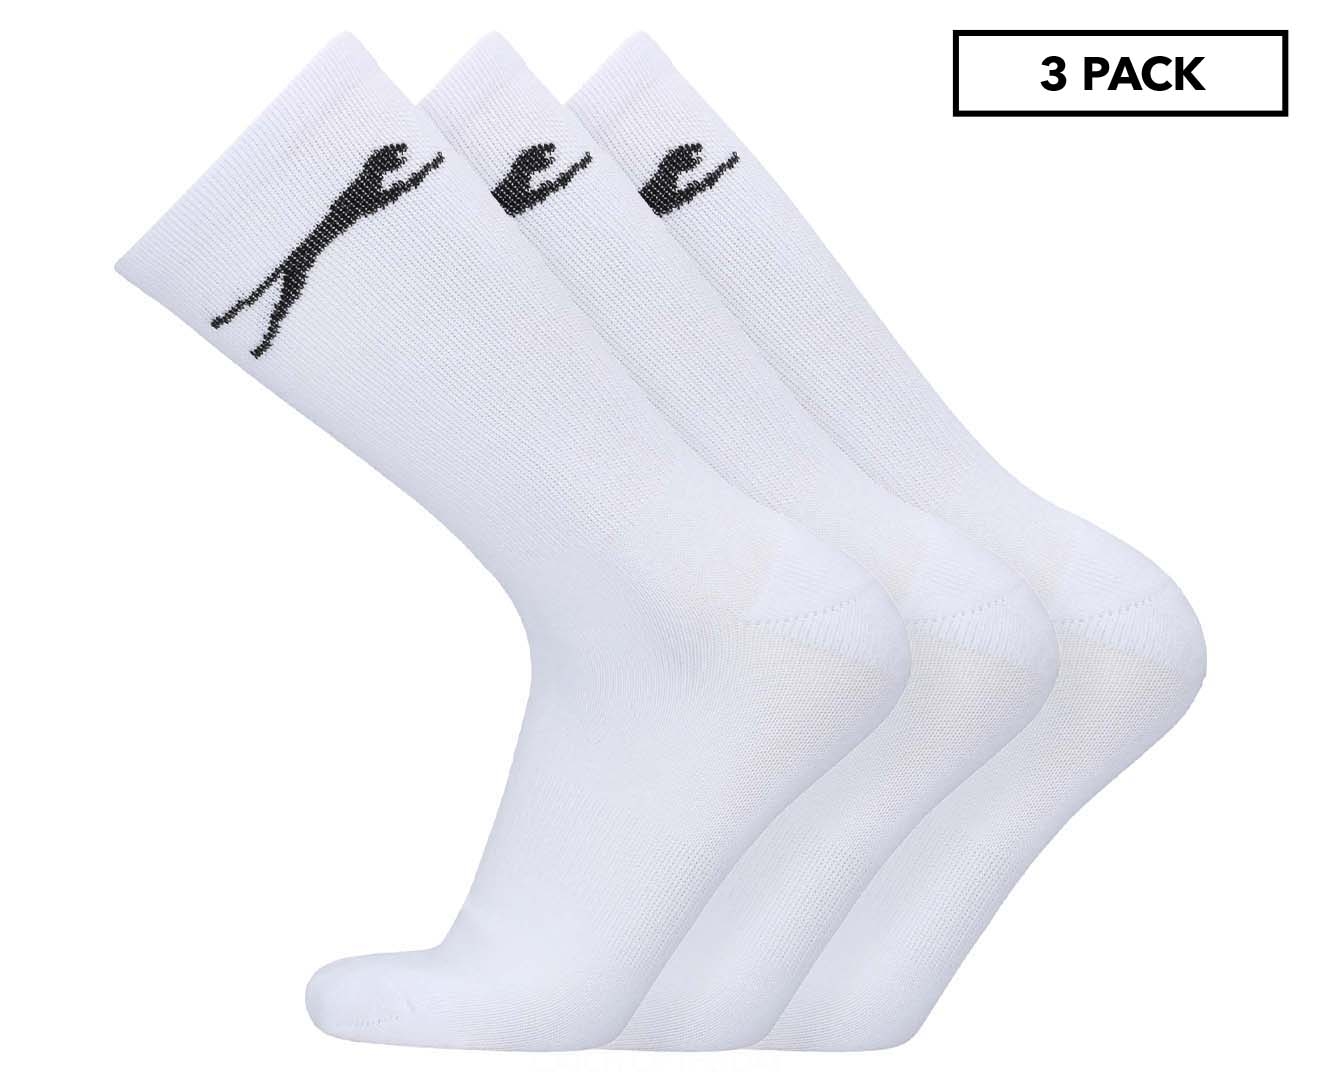 Slazenger Men's Crew Socks 3-Pack - White | Catch.co.nz